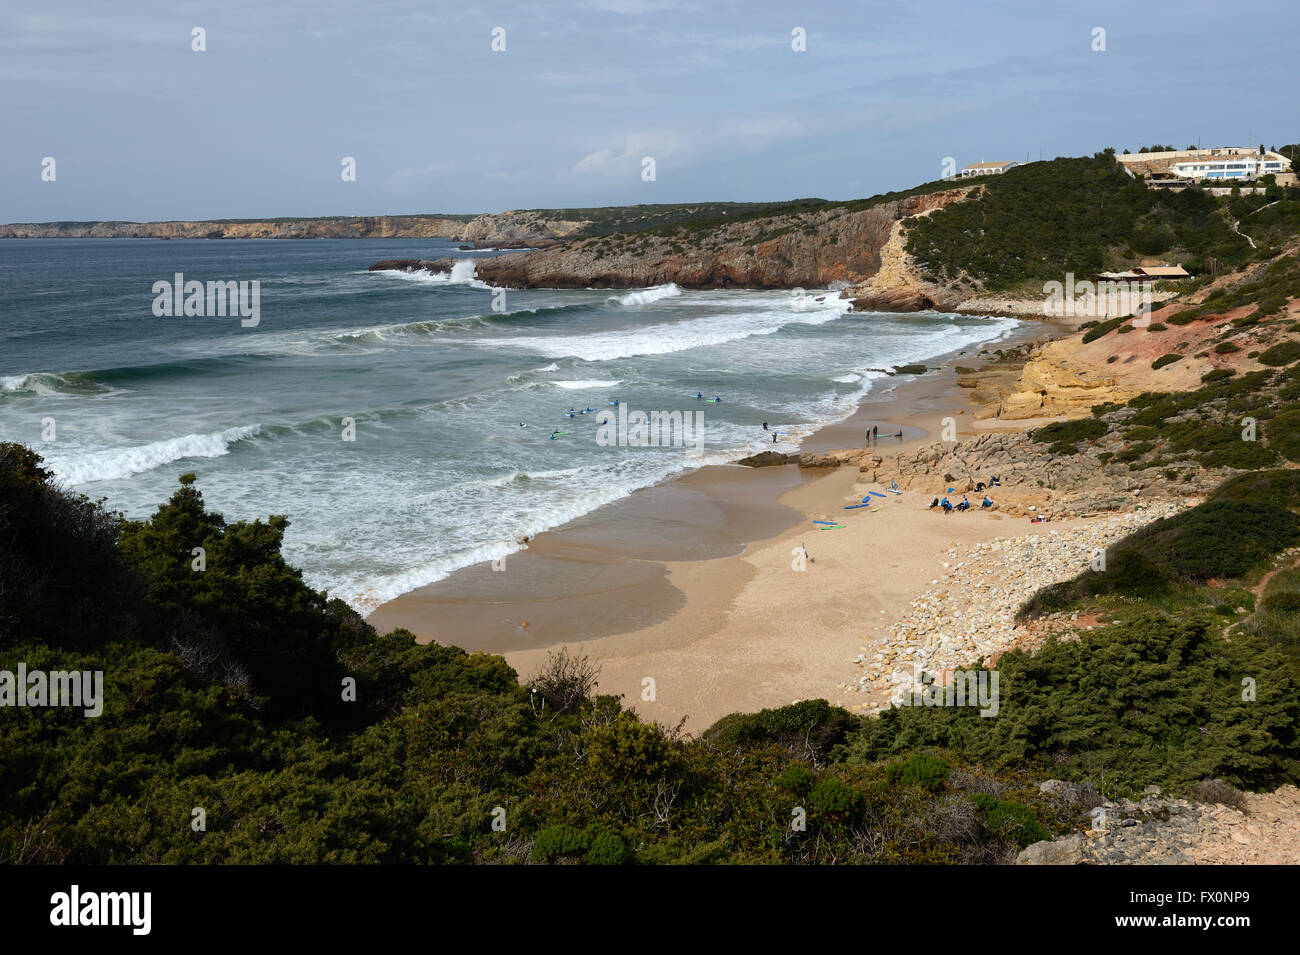 Les rouleaux de l'Atlantique surf dans une baie sur l'Algarve près de Sagres au Portugal. Pratiques d'une école de surf dans les eaux peu profondes. Banque D'Images